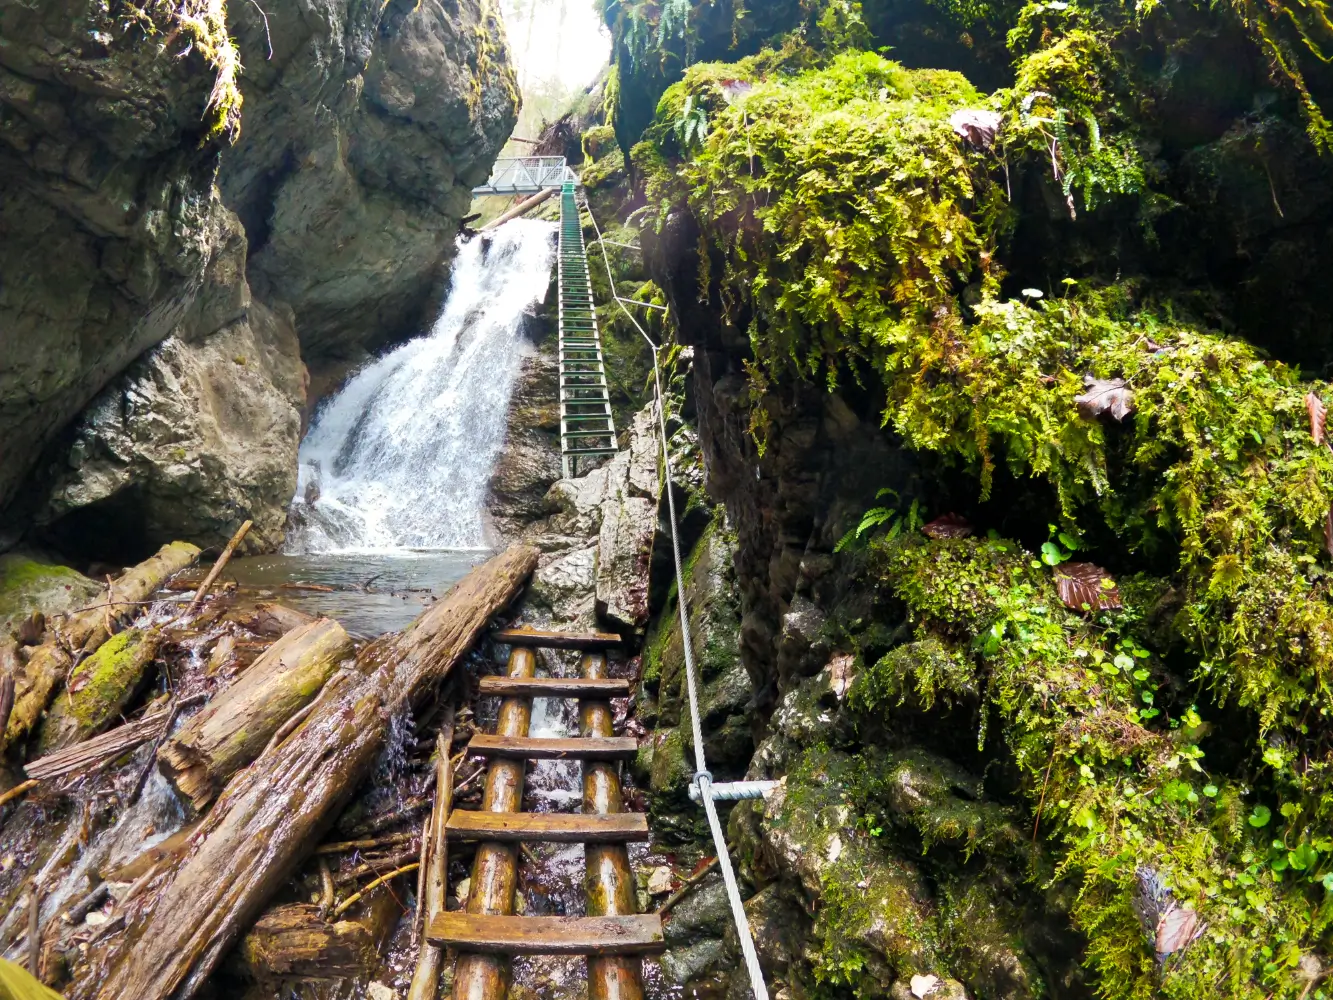 Rebríky, stúpačky, oceľové laná, ale najmä jedinečná príroda. Zoznámte sa so Slovenským rajom.